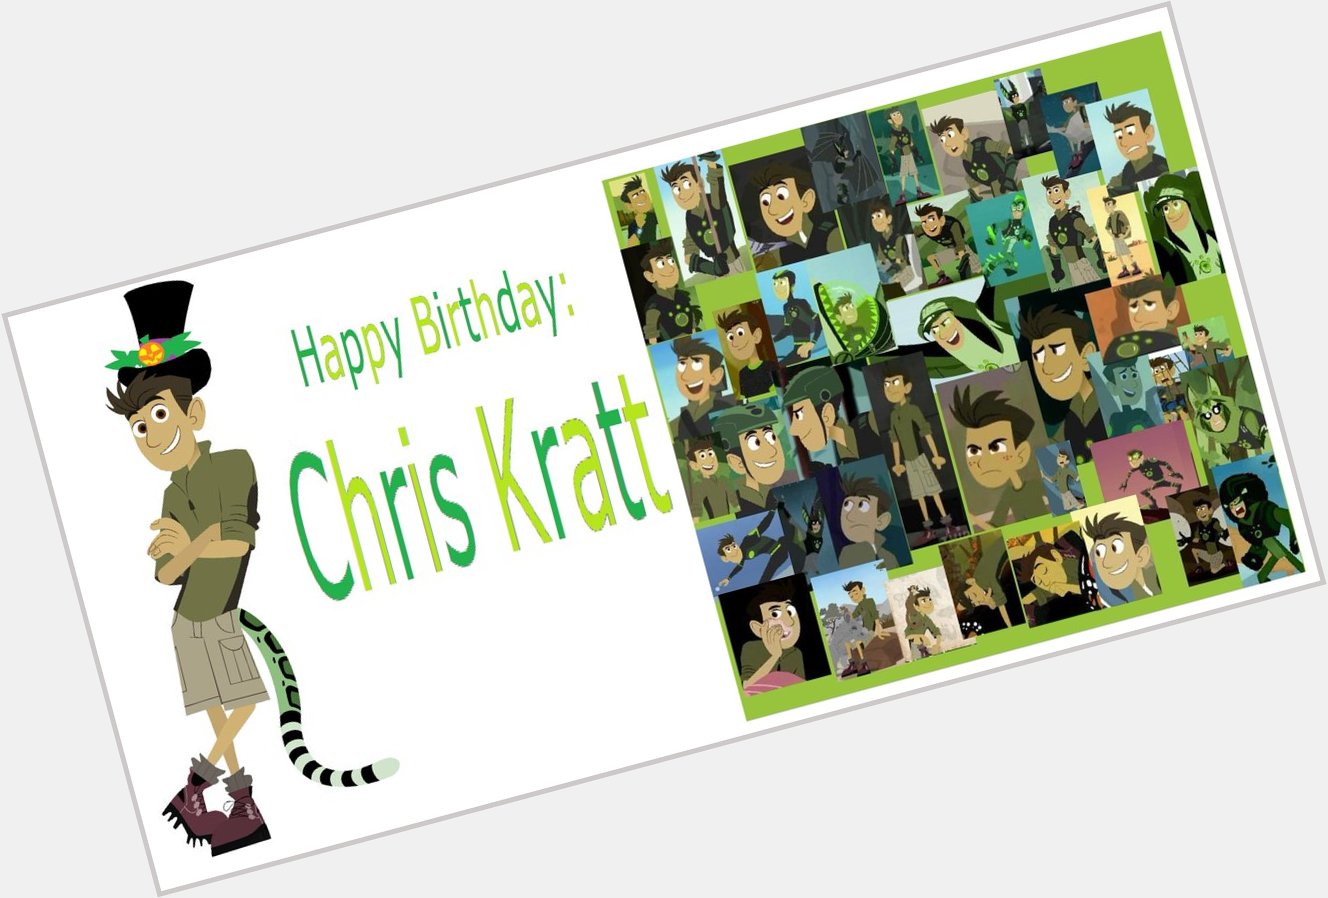 Happy Birthday Chris Kratt by Nora Rosa   